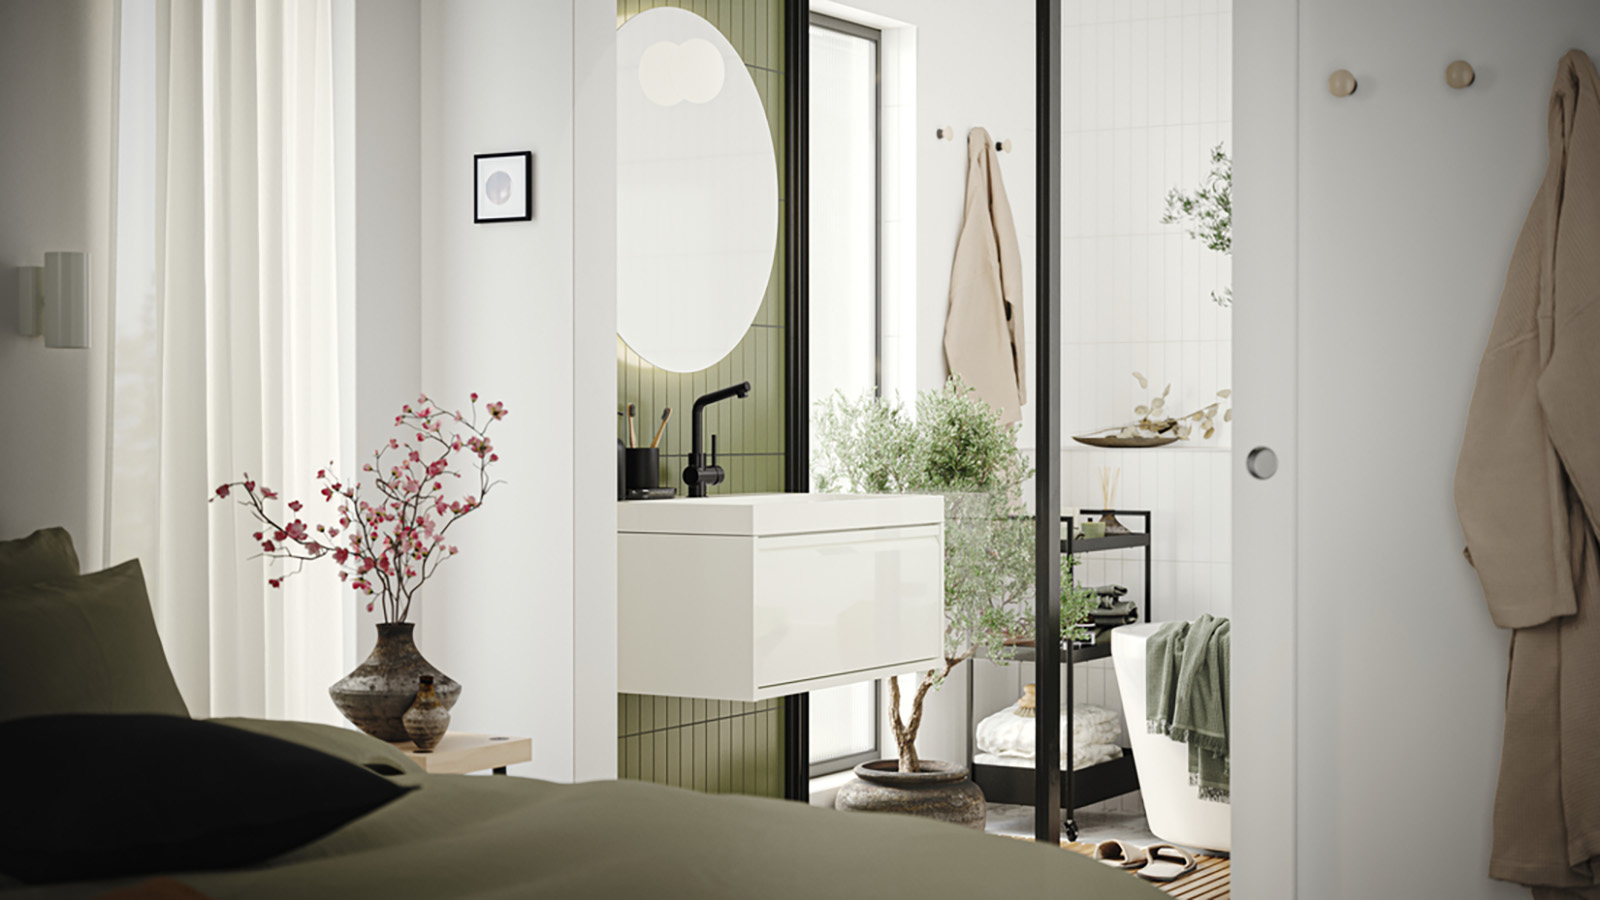 IKEA - A small bathroom becomes a minimalist oasis